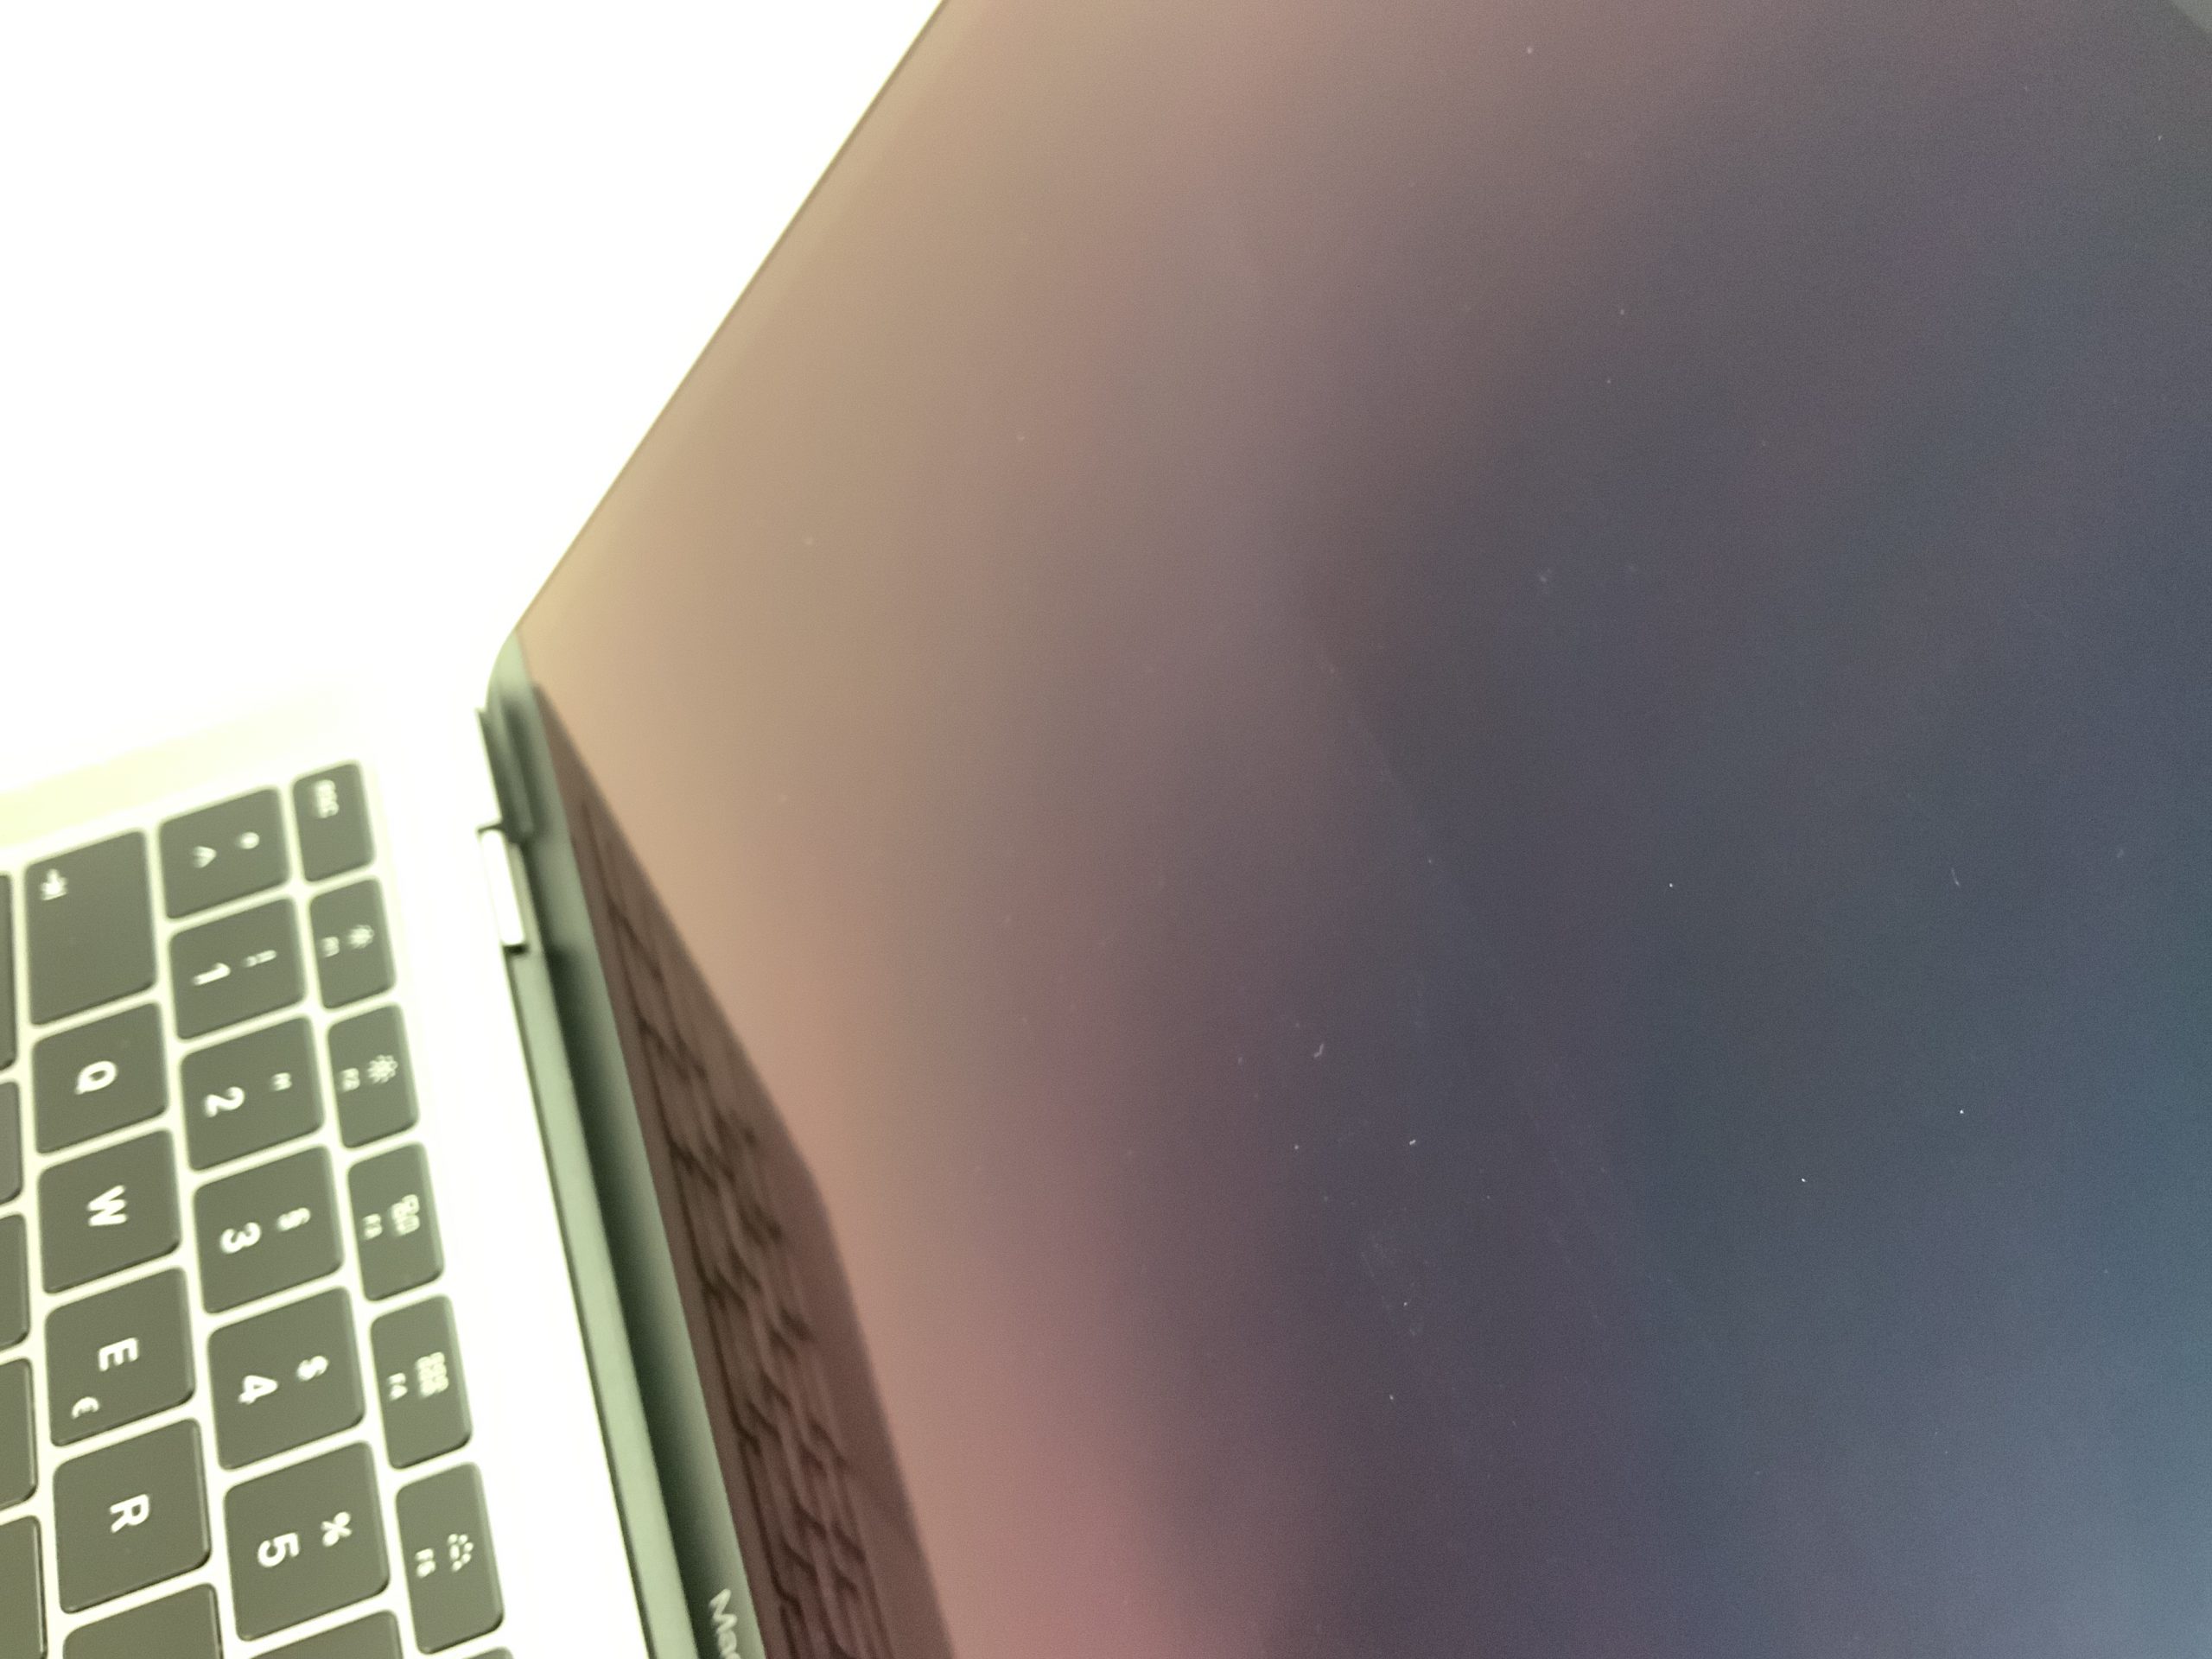 MacBook Air 13" Mid 2019 (Intel Core i5 1.6 GHz 8 GB RAM 512 GB SSD), Space Gray, Intel Core i5 1.6 GHz, 8 GB RAM, 512 GB SSD, image 2